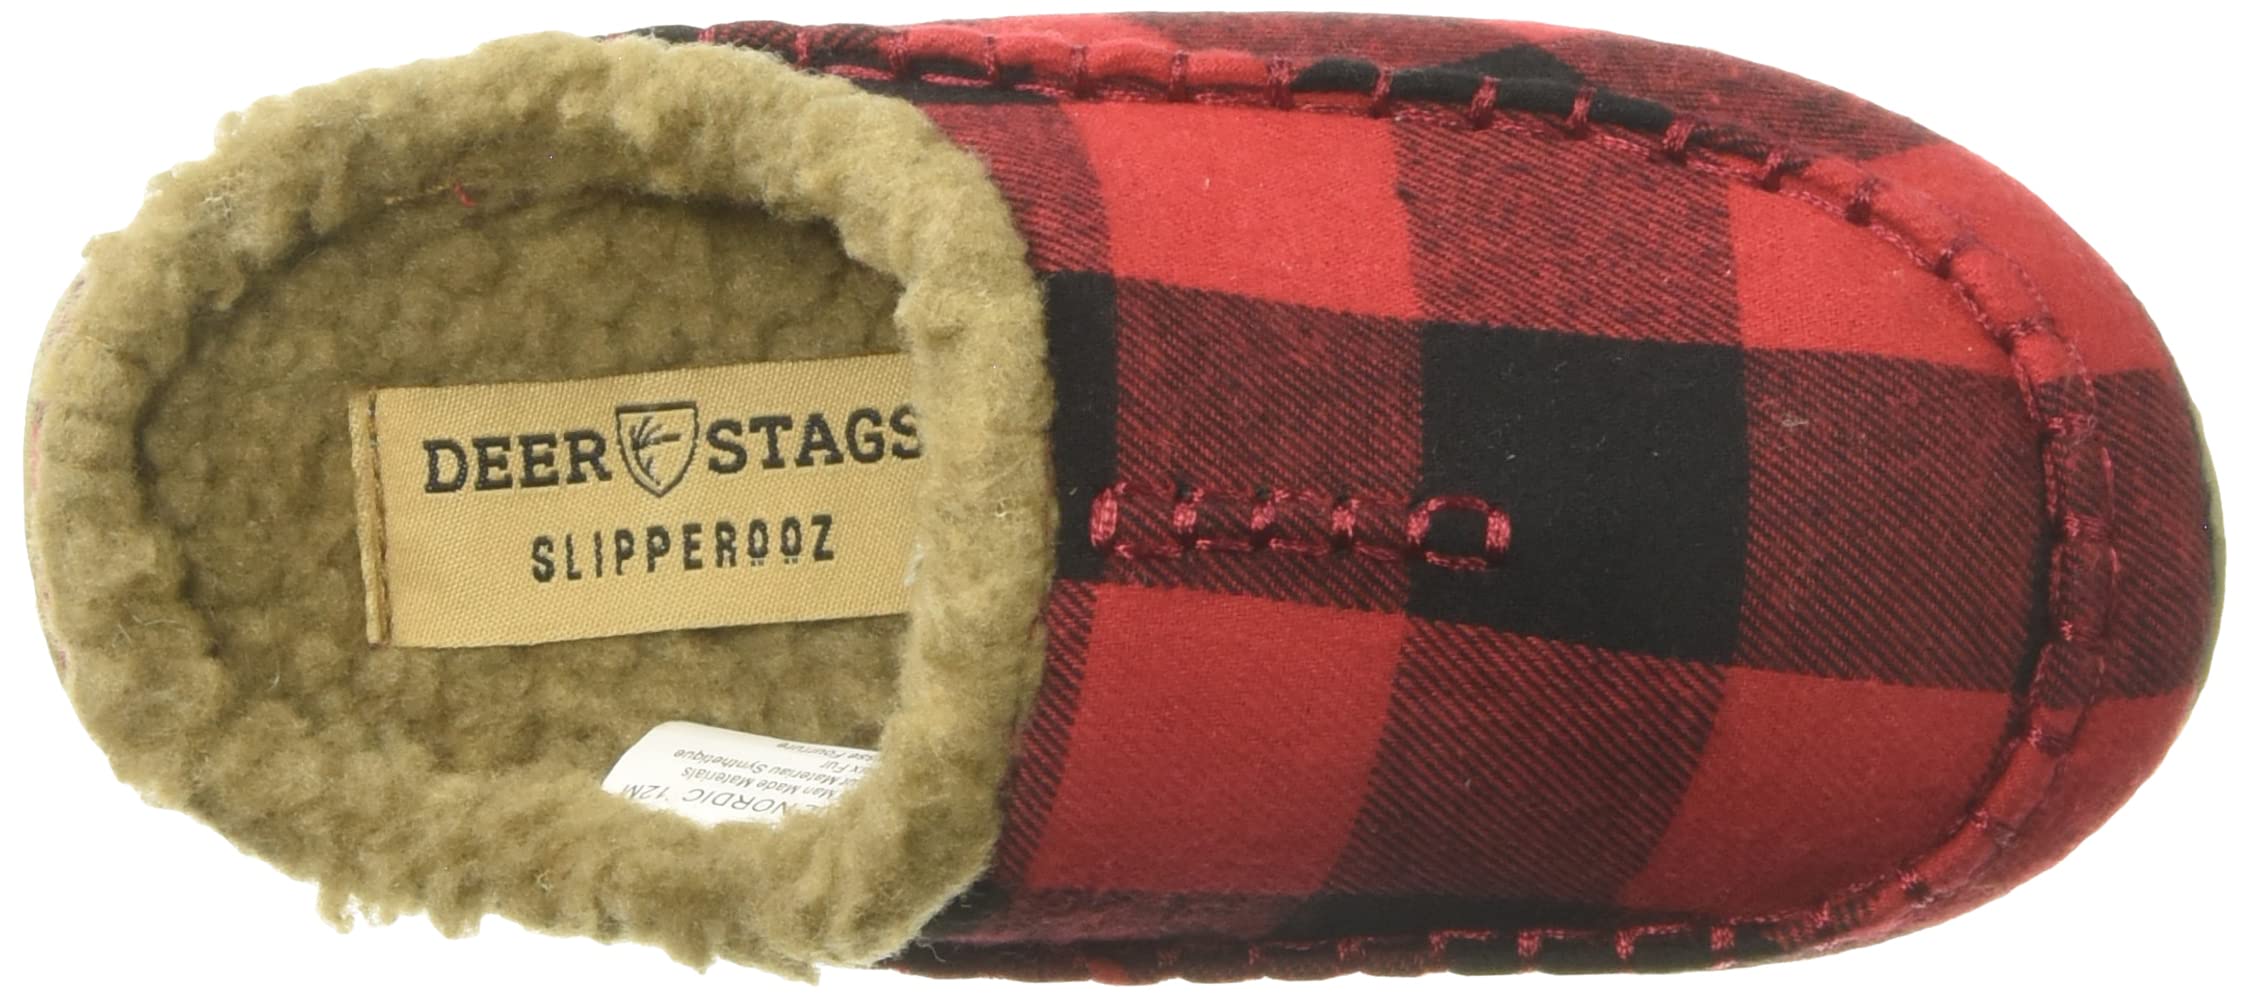 Deer Stags Unisex-Child Slipper